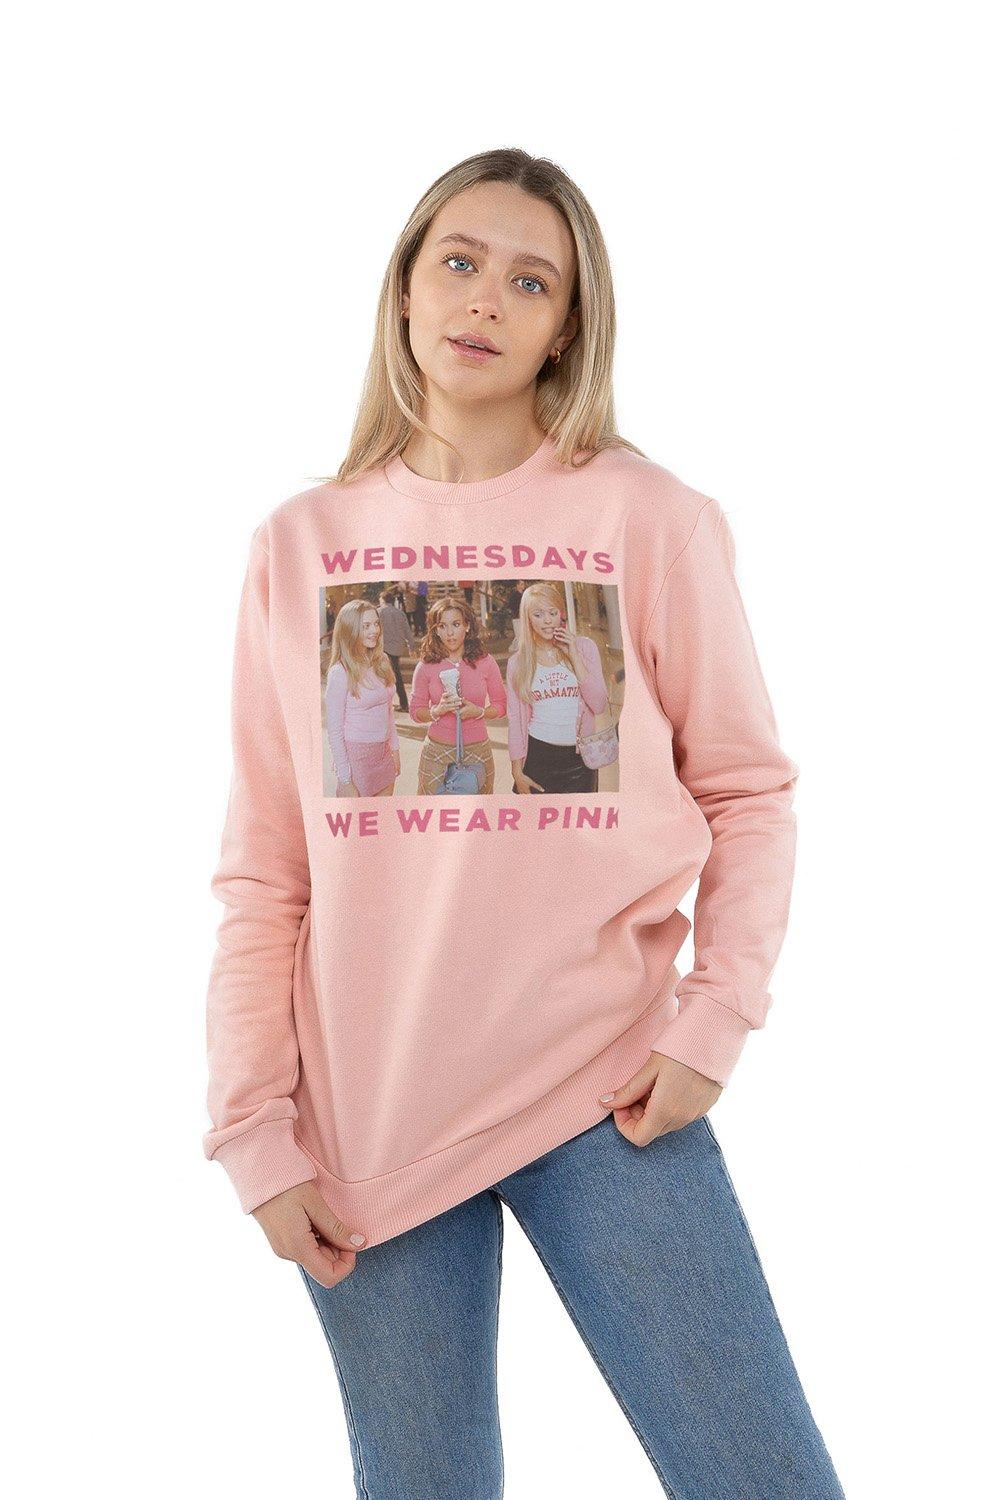 Mean Girls On Wednesdays We Wear Pink Crew Sweatshirt